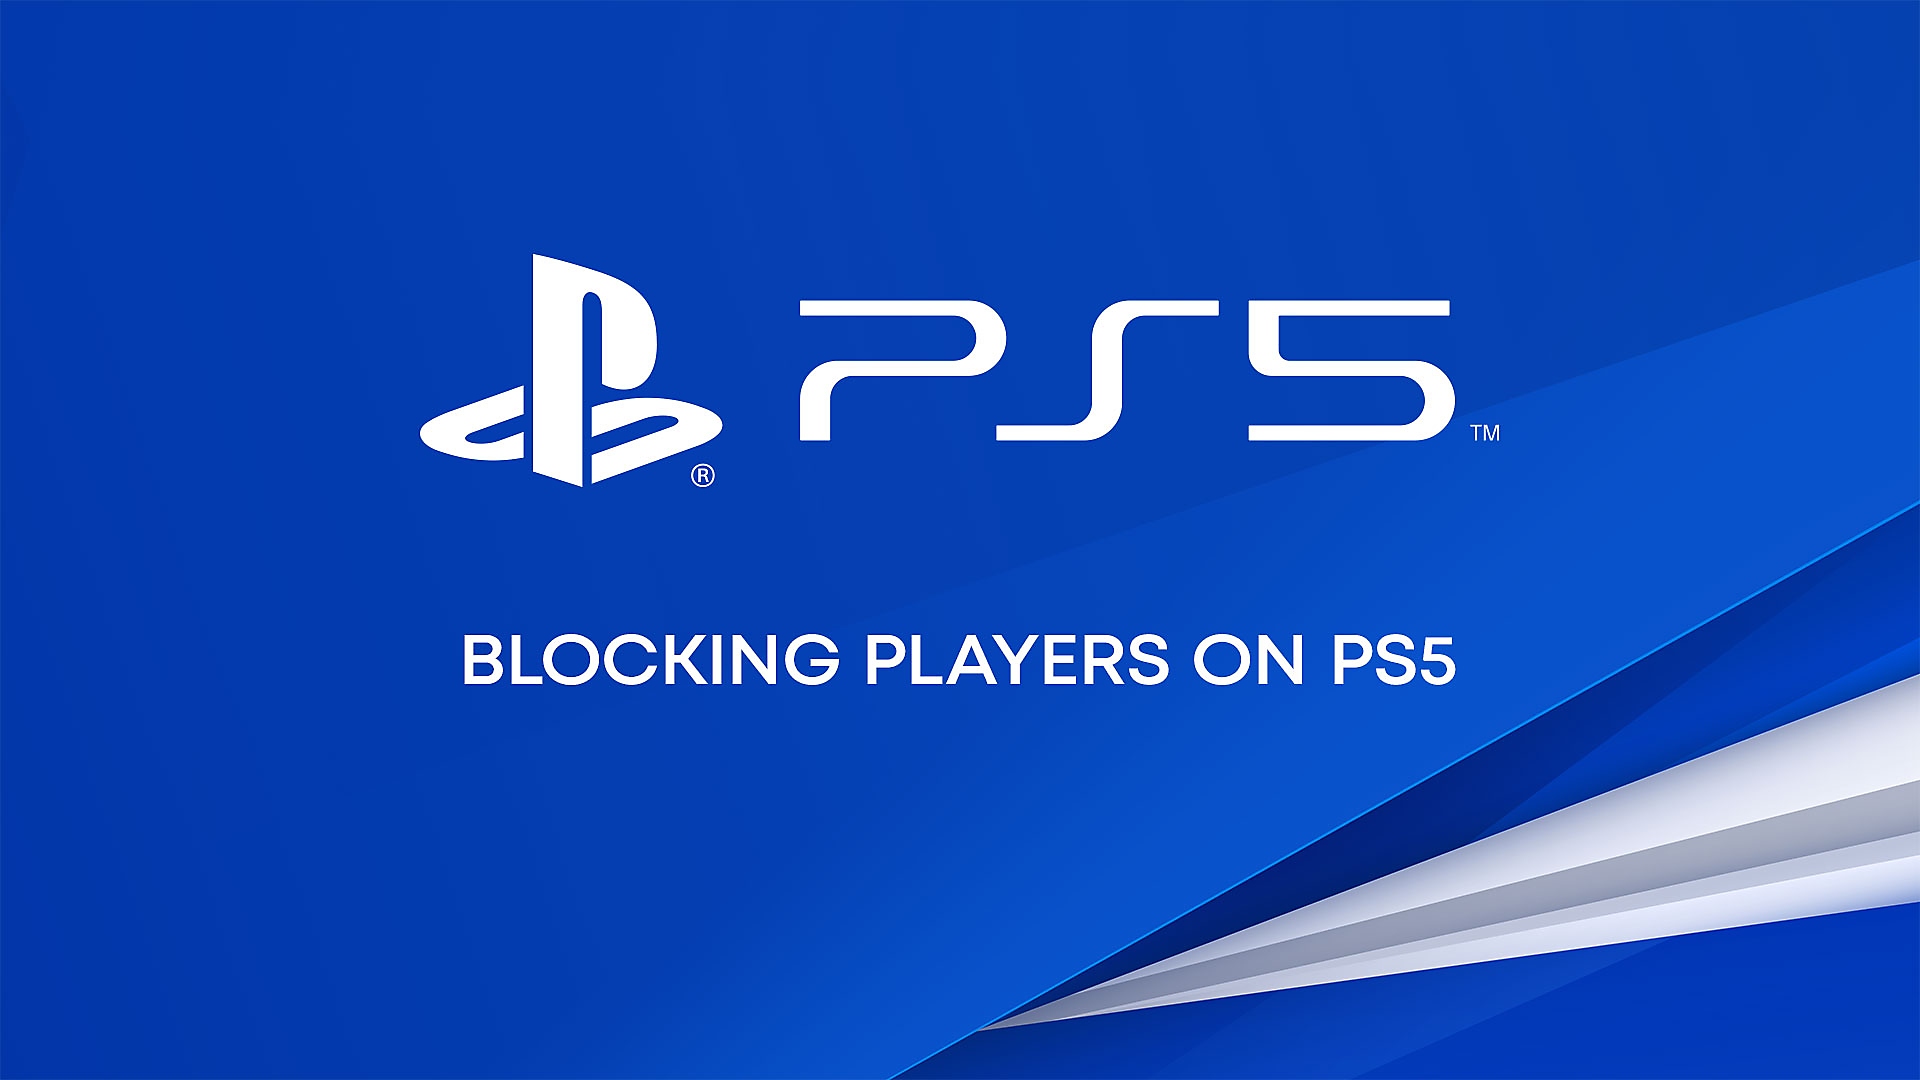 YouTube-Video zum Blockieren von Spielern auf der PS5-Konsole